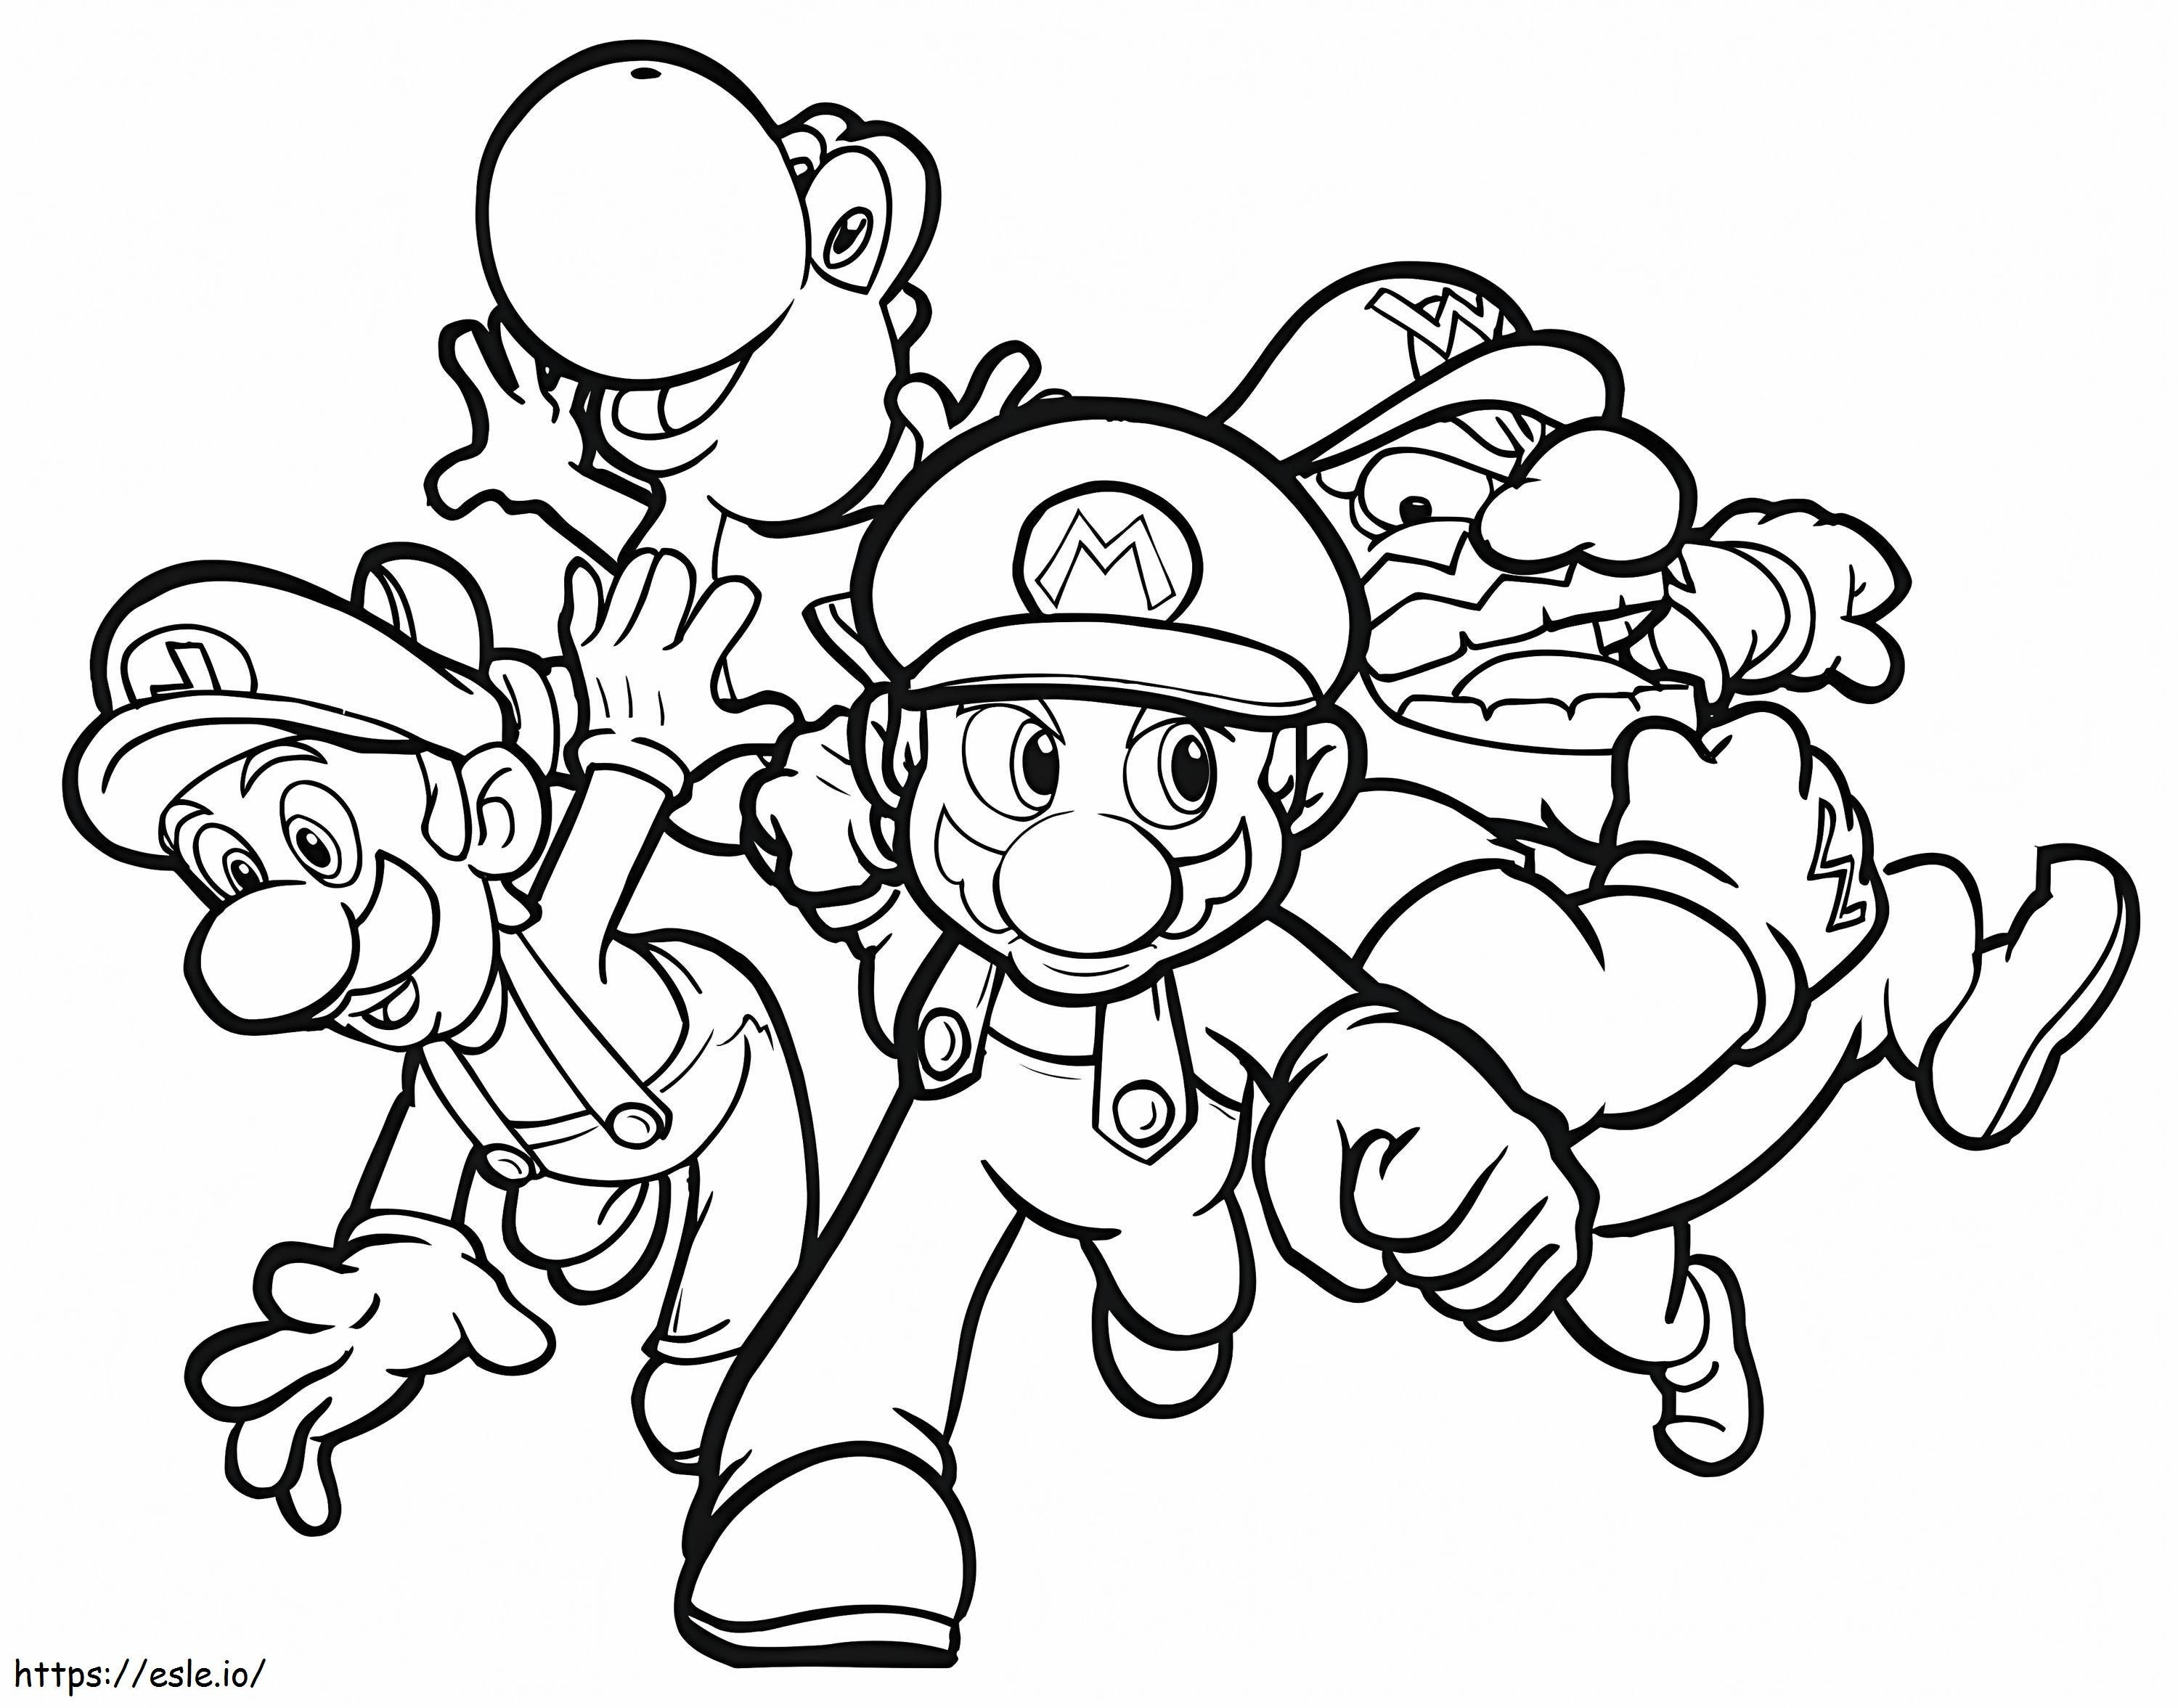 Personaje din Mario 1 de colorat